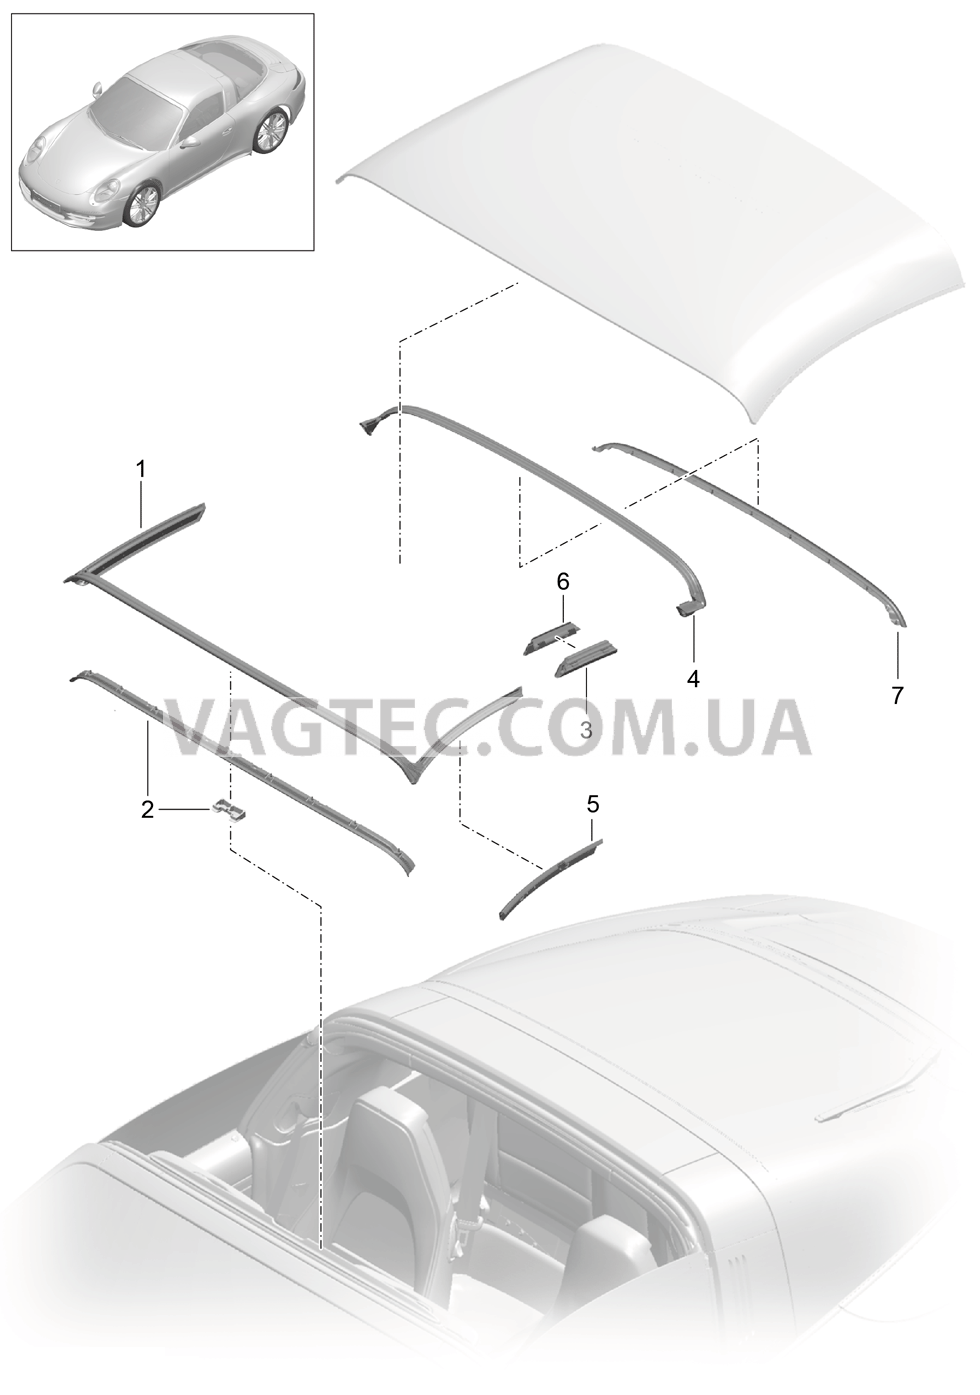 811-032 Складной верх, Прокладка
						
						TARGA для PORSCHE 911.Carrera 2012-2016USA